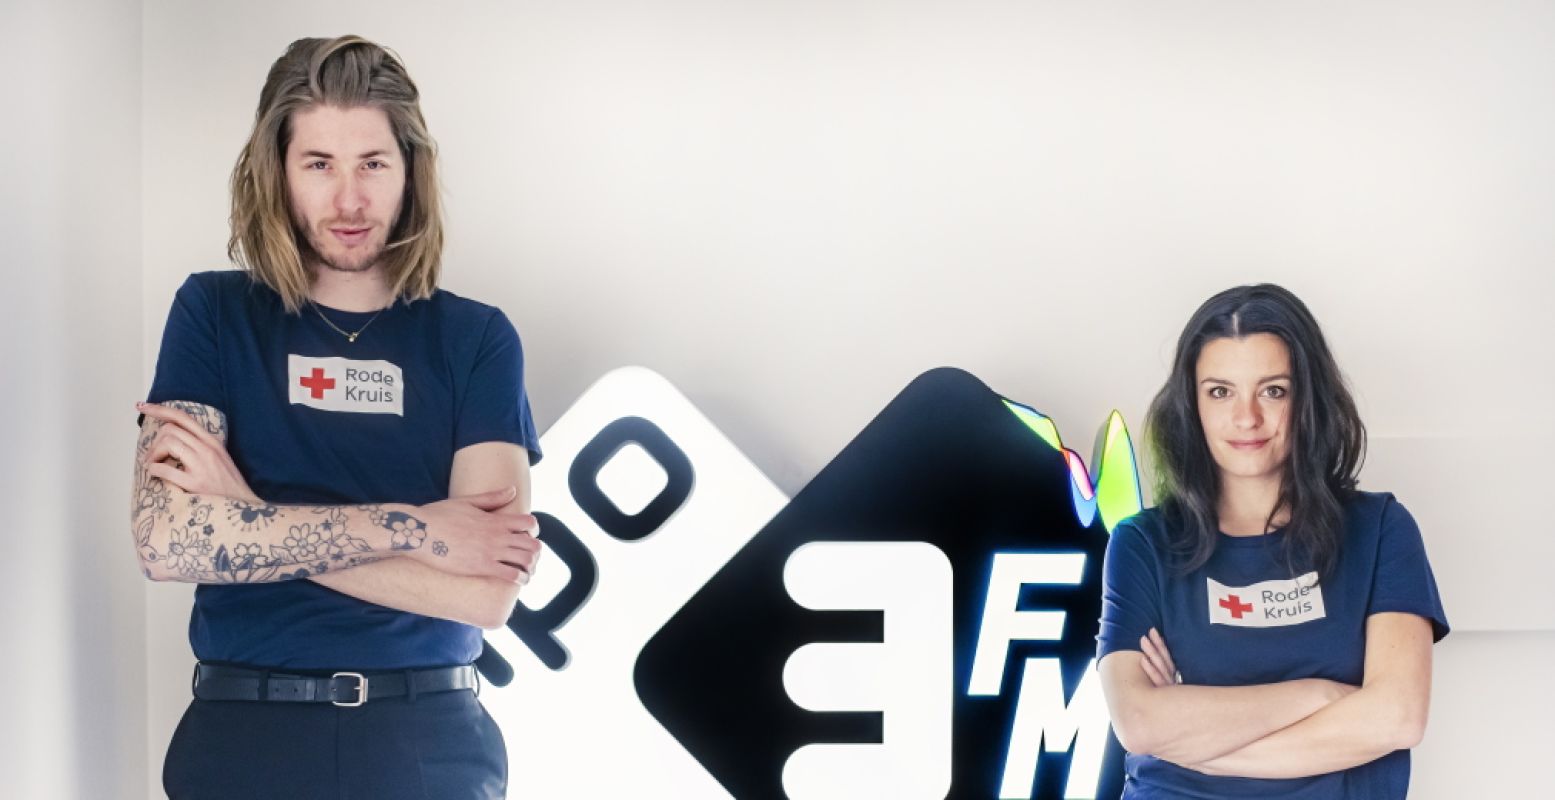 3FM-dj's Frank van der Lende en Eva Koreman komen in actie voor Serious Request: Never Walk Alone. Foto: NPO 3FM / Hans-Peter van Velthoven.